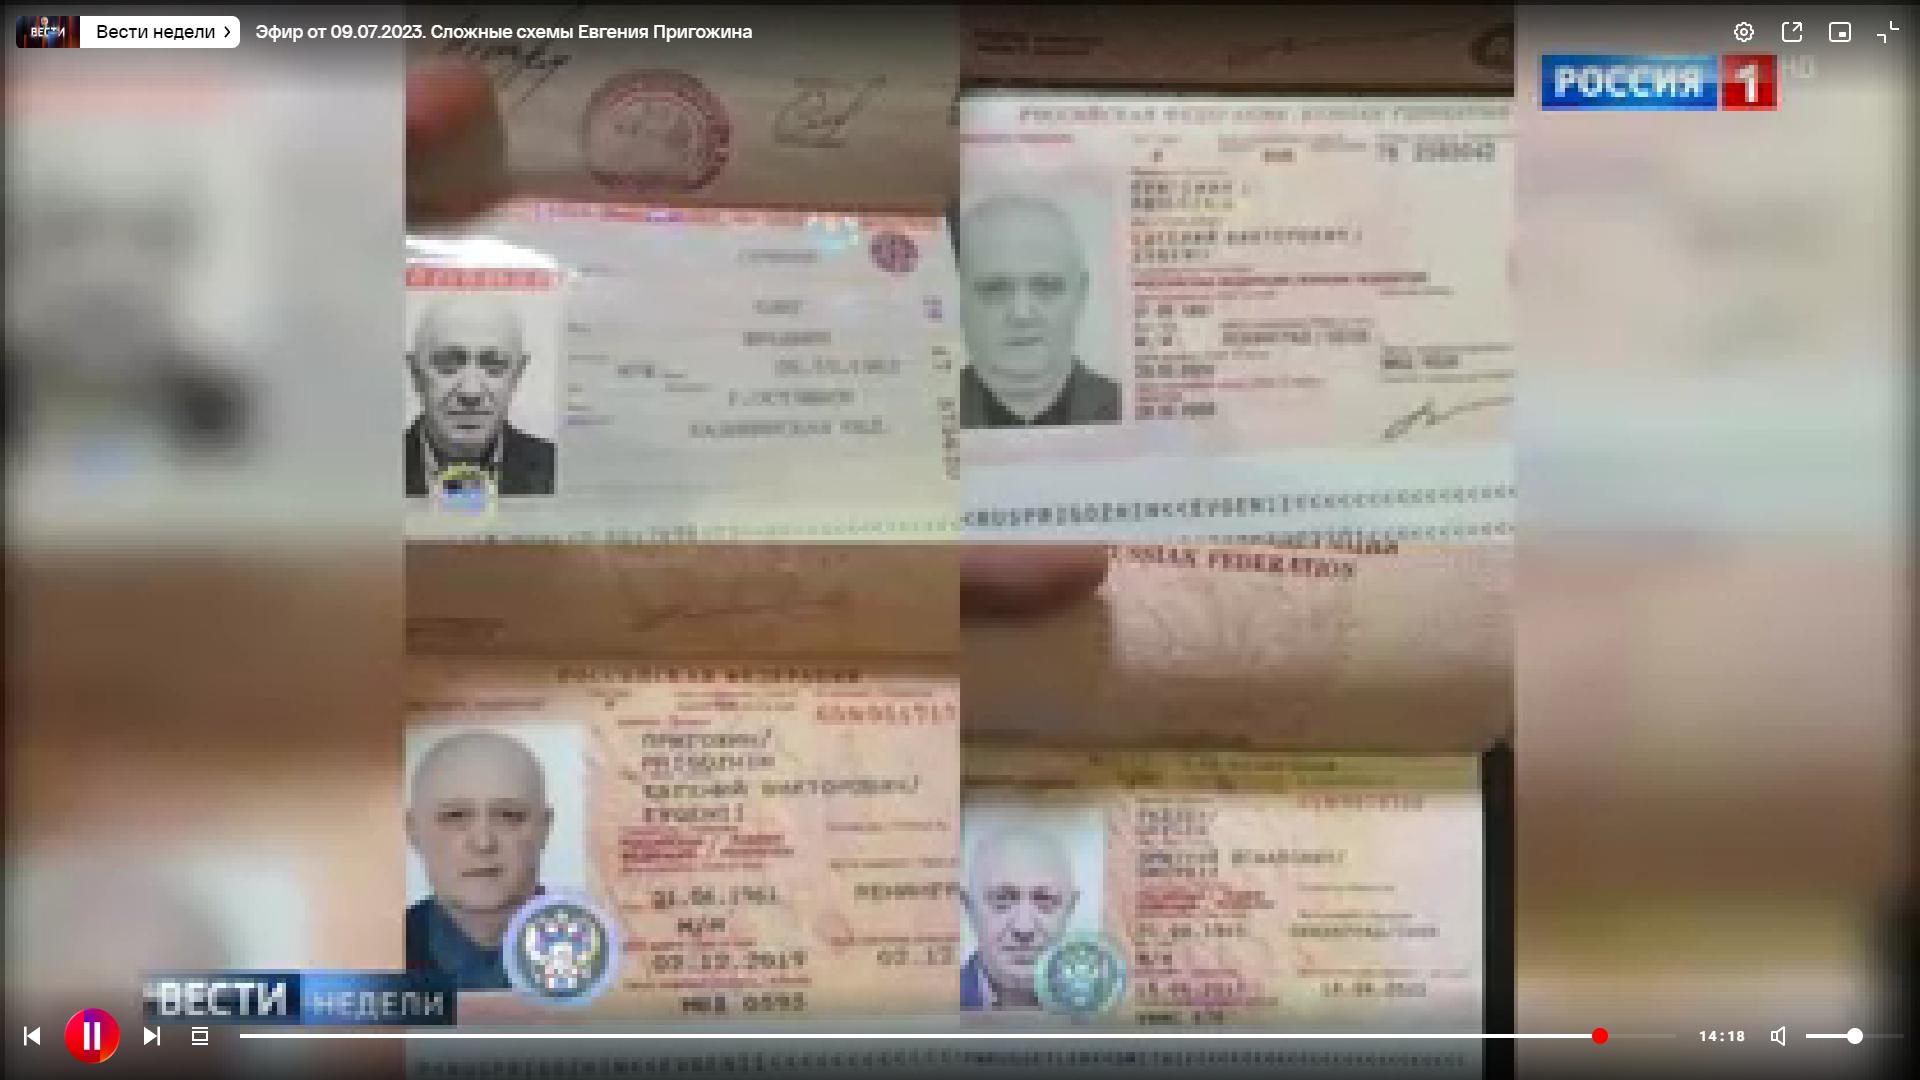 Telewizyjny kadr z paszportami dla tej samem osoby (Prigożyna) na różne naziwska